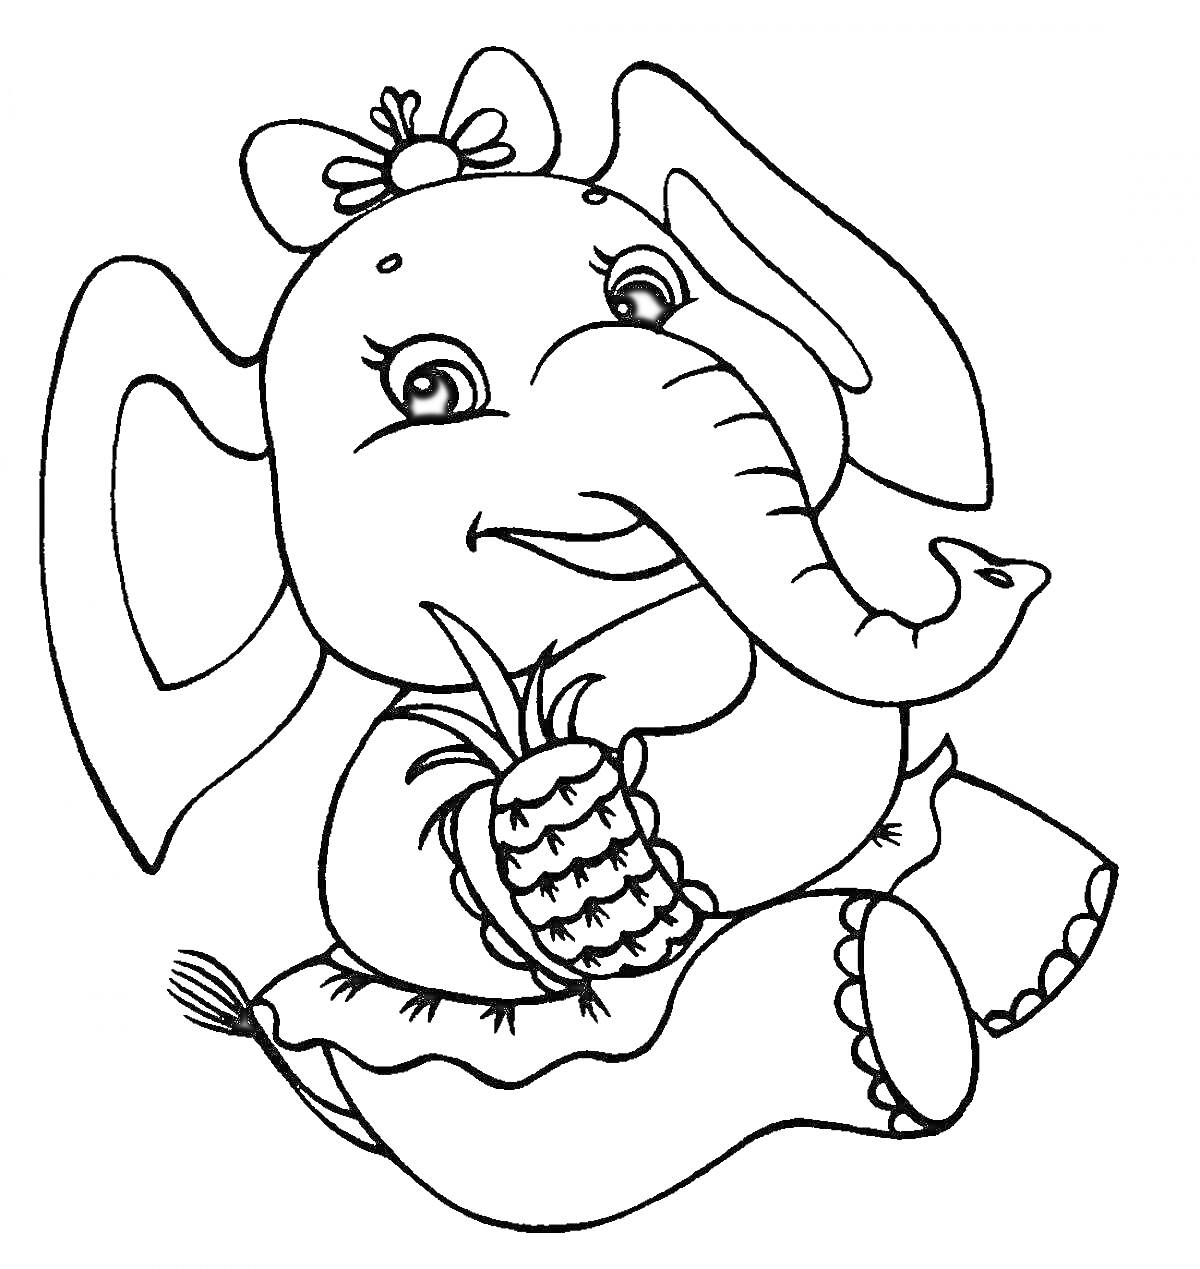 Раскраска Слон с ананасом и бантом на голове